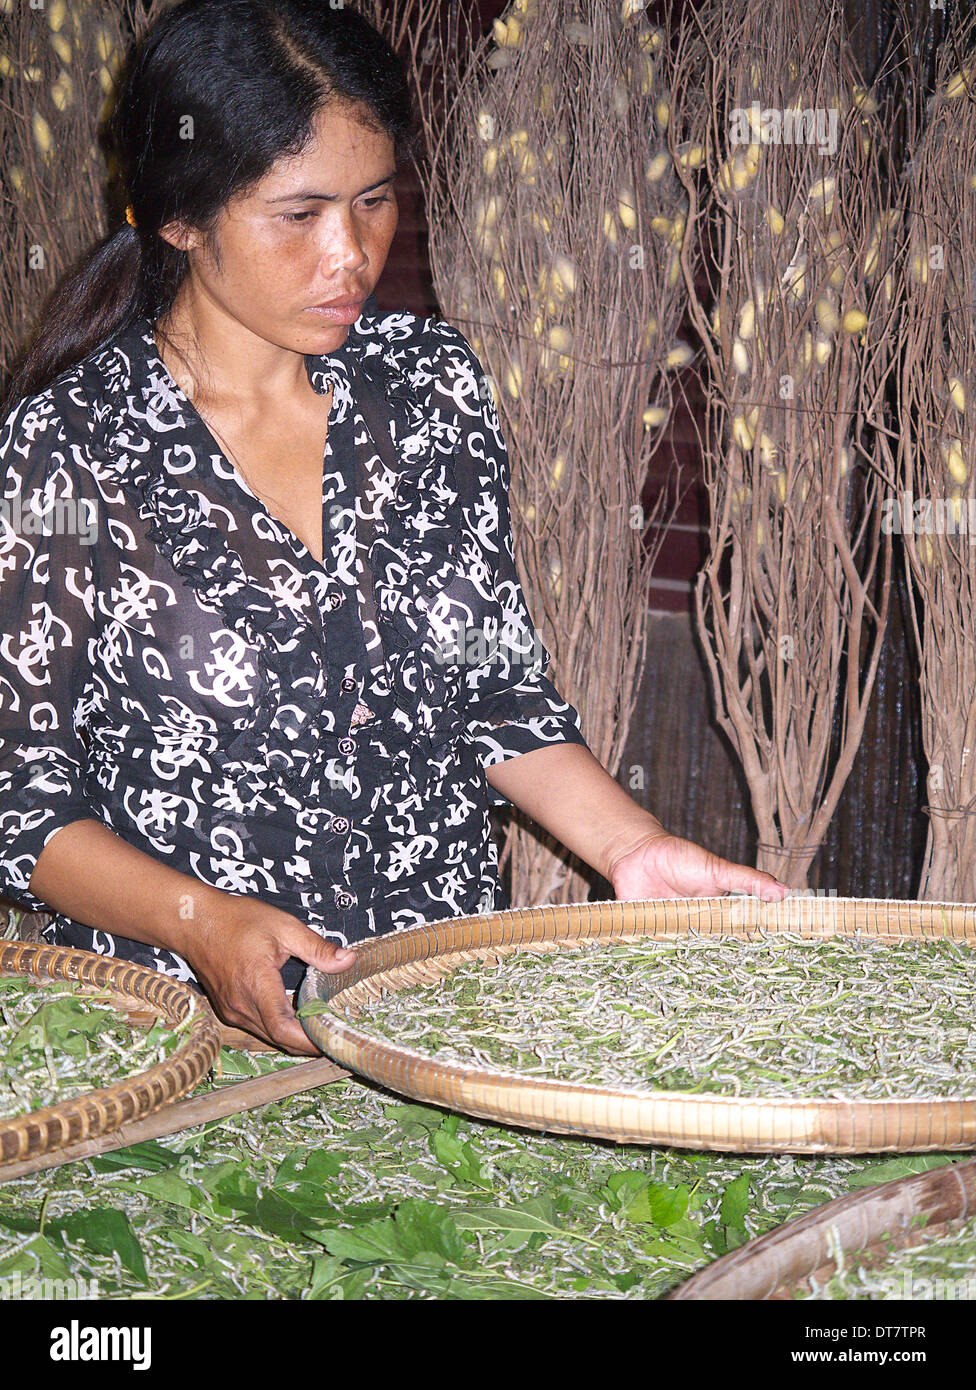 Woman tending village cambodgien de vers à soie Cocons avec derrière Banque D'Images